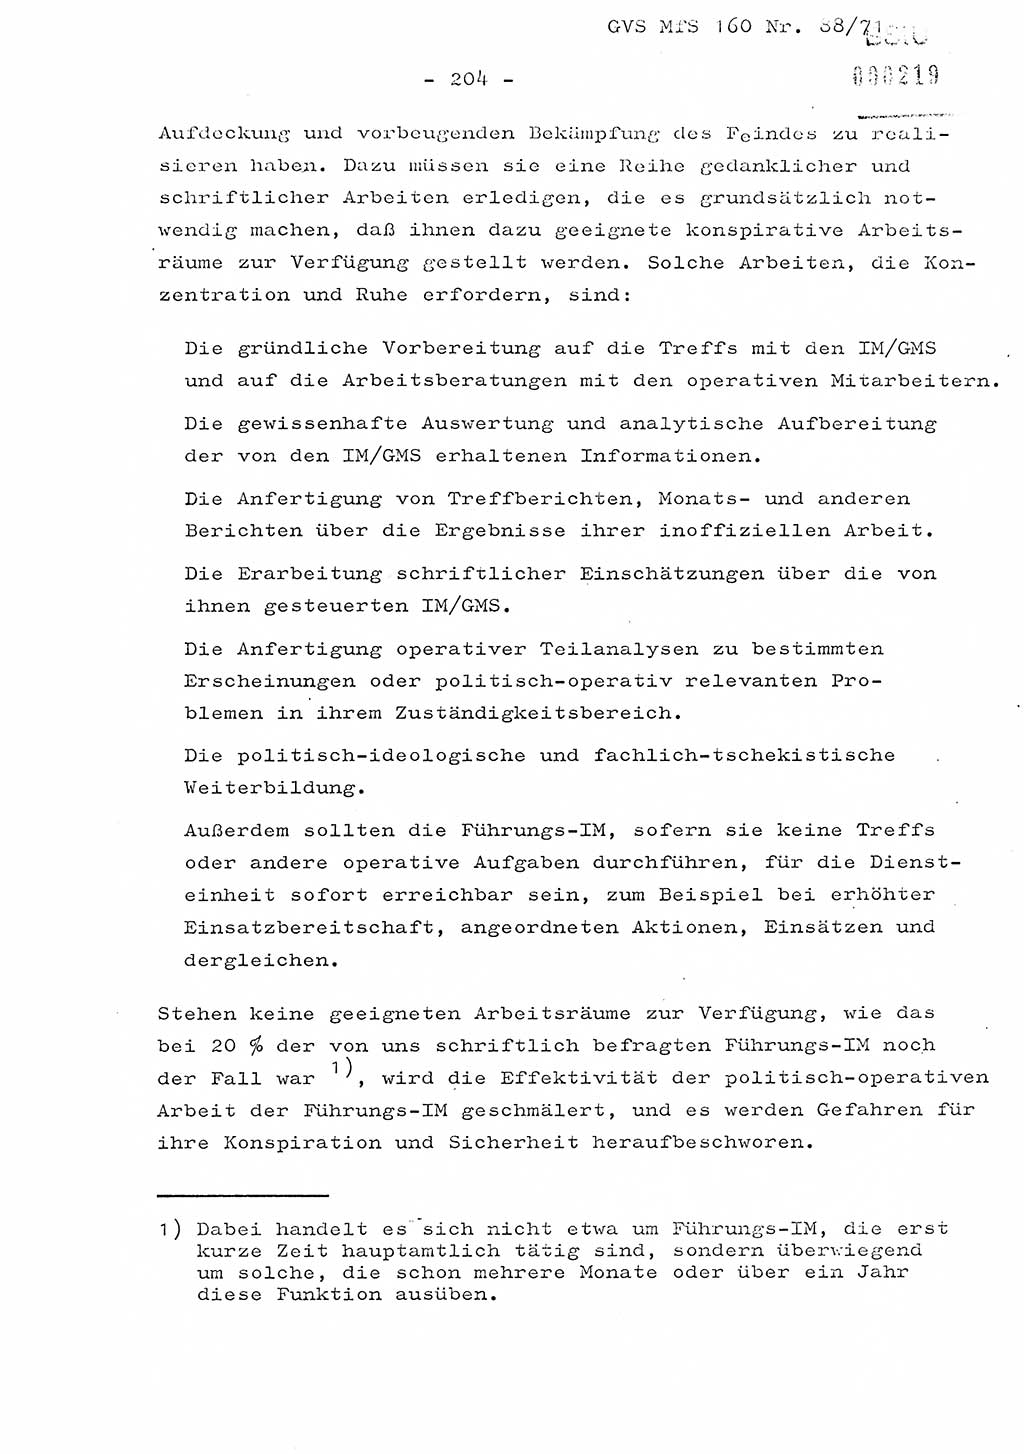 Dissertation Oberstleutnant Josef Schwarz (BV Schwerin), Major Fritz Amm (JHS), Hauptmann Peter Gräßler (JHS), Ministerium für Staatssicherheit (MfS) [Deutsche Demokratische Republik (DDR)], Juristische Hochschule (JHS), Geheime Verschlußsache (GVS) 160-88/71, Potsdam 1972, Seite 204 (Diss. MfS DDR JHS GVS 160-88/71 1972, S. 204)